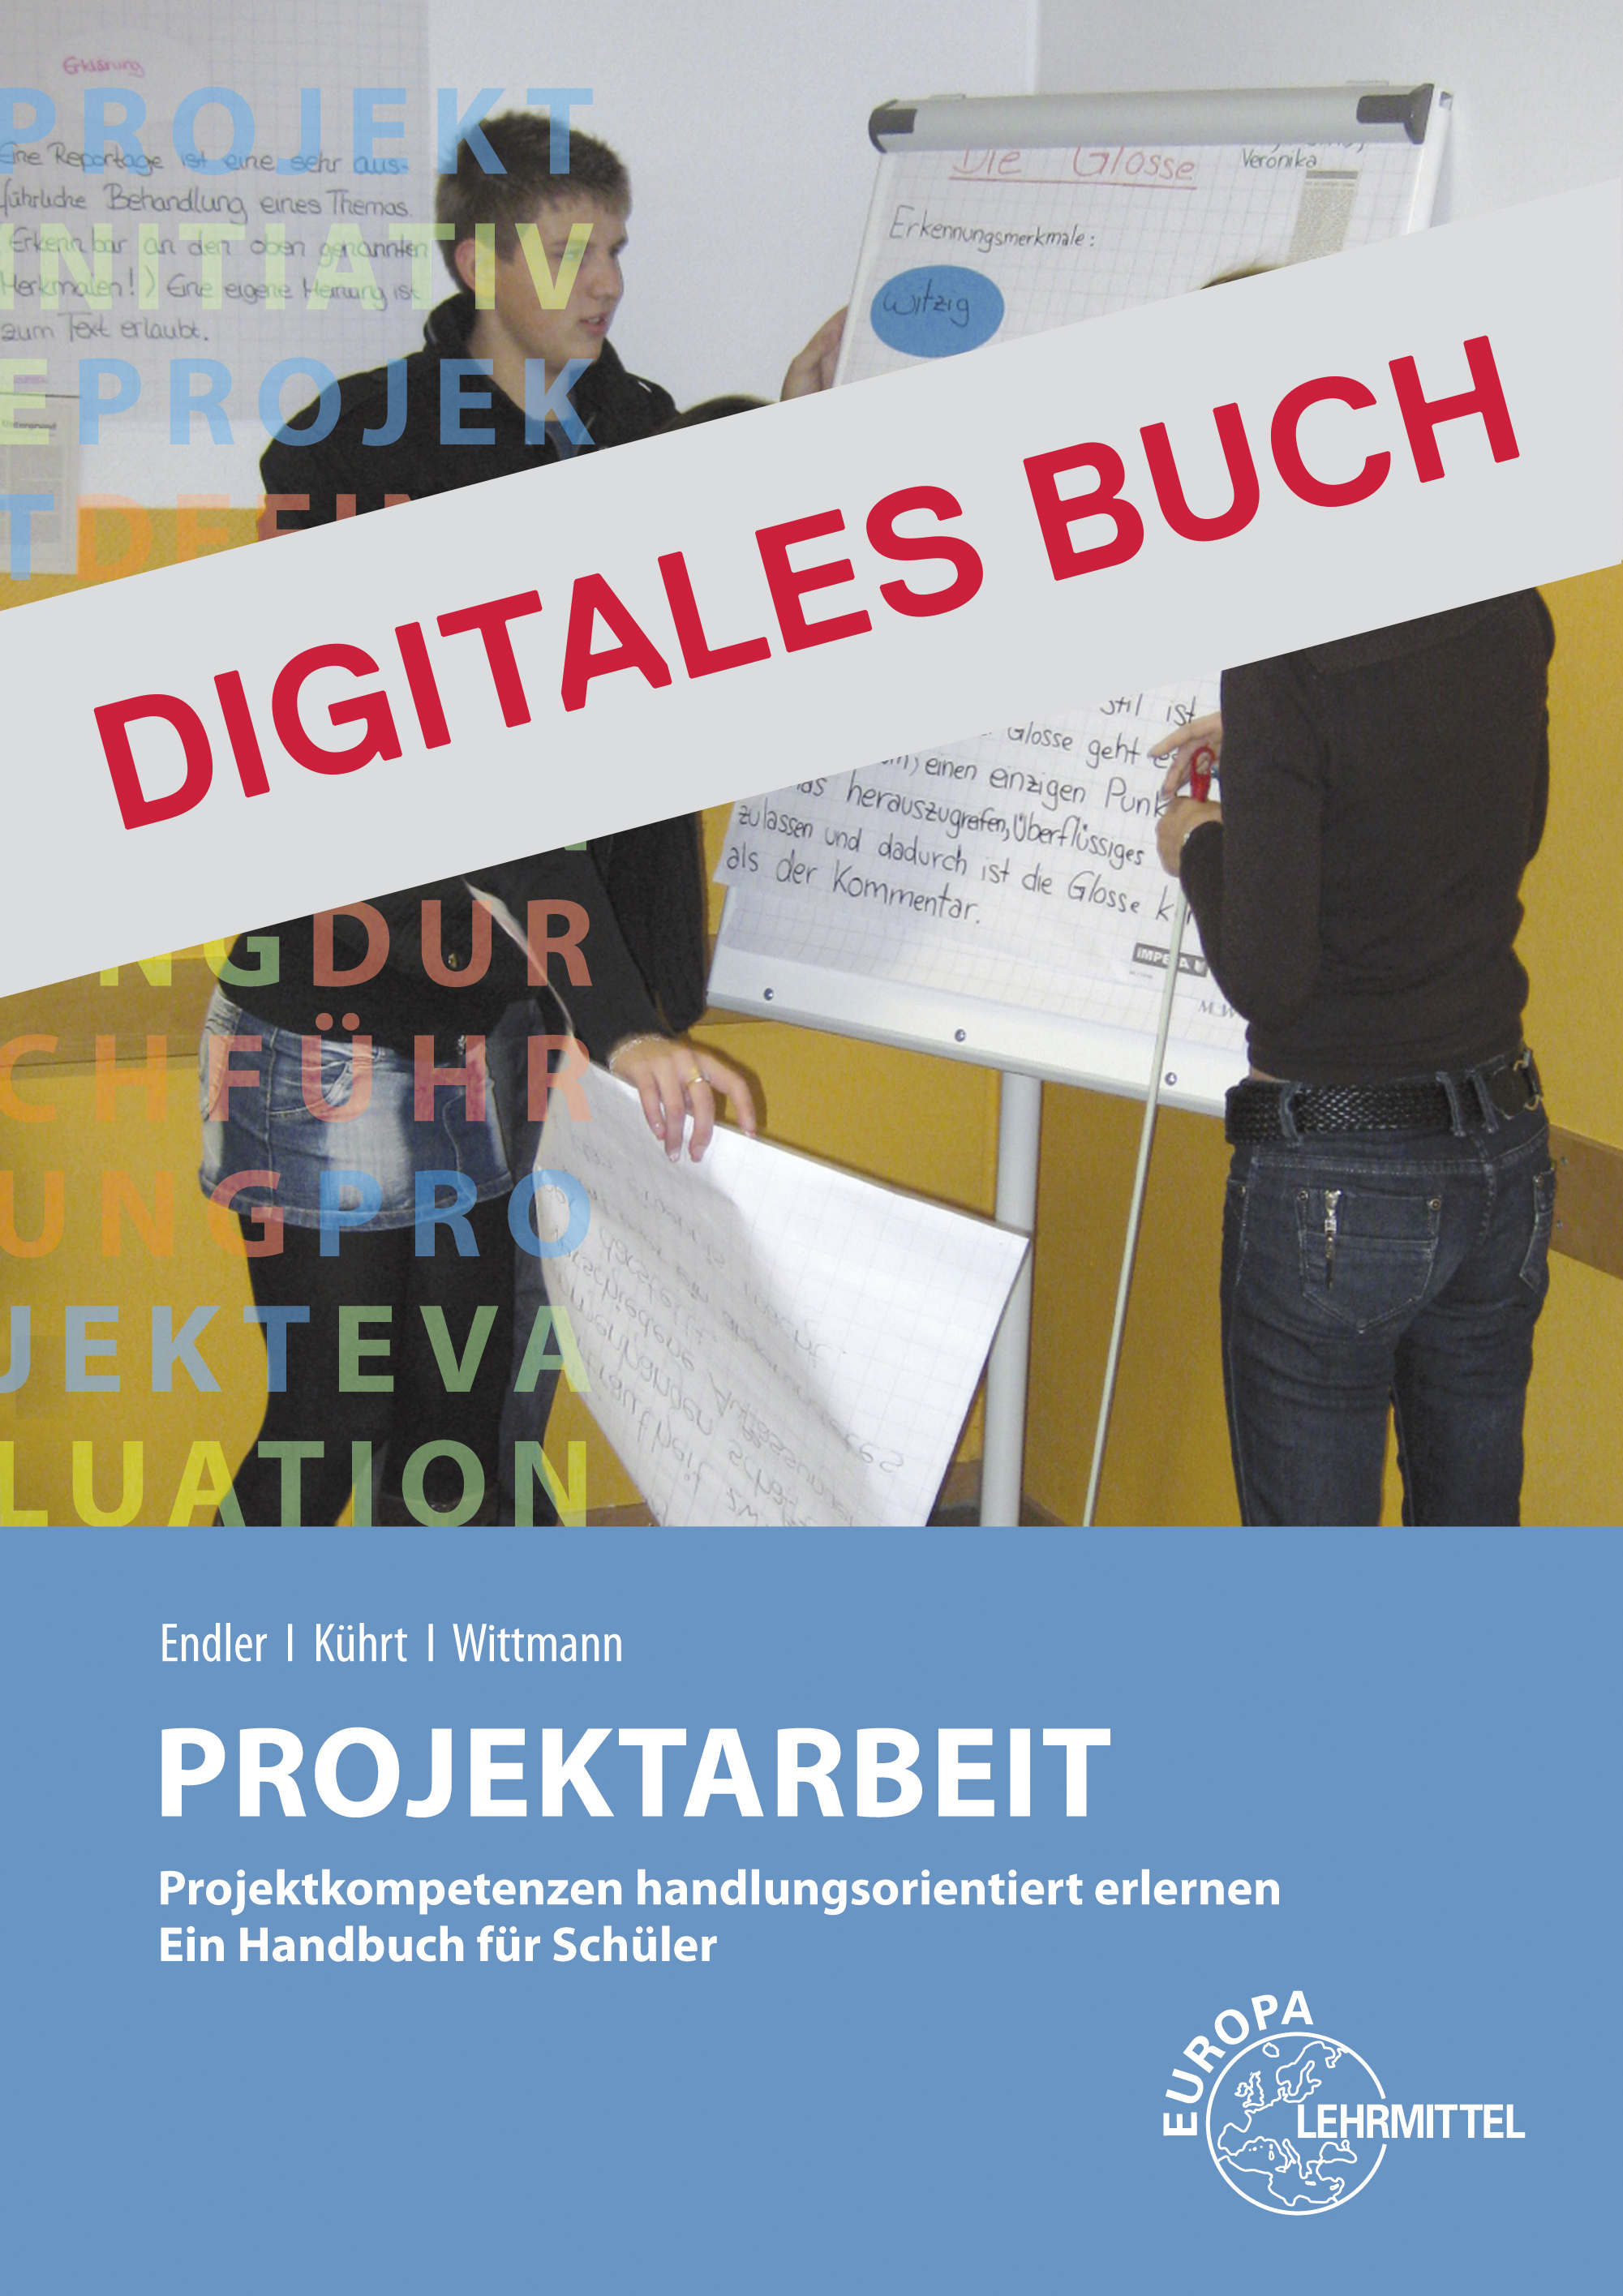 Projektarbeit in der Wirtschaftsschule in Bayern - Digitales Buch